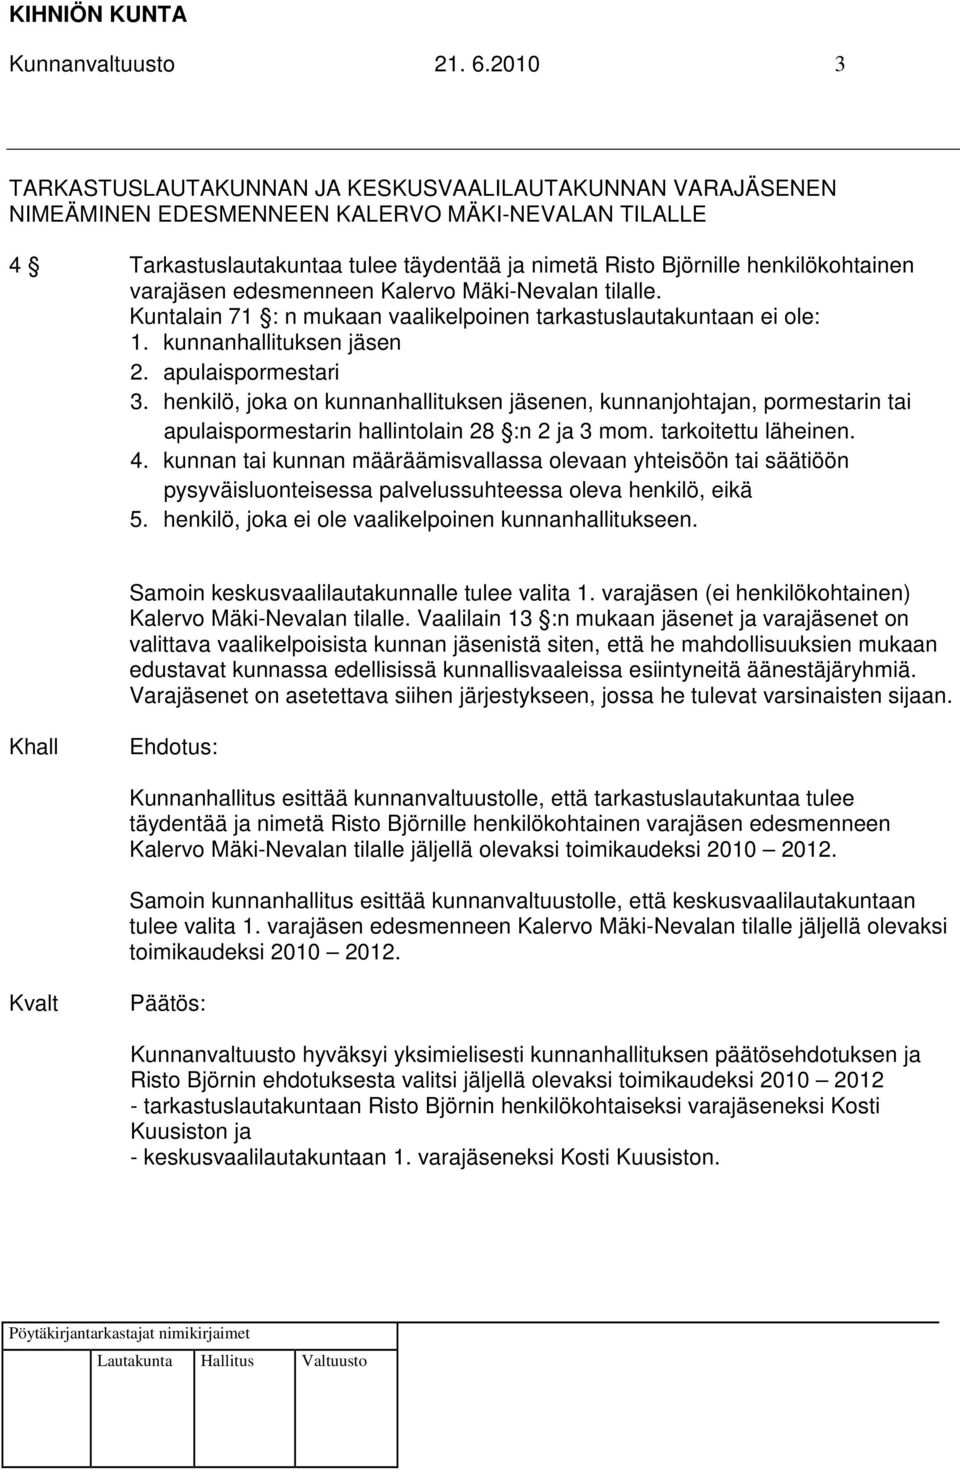 varajäsen edesmenneen Kalervo Mäki-Nevalan tilalle. Kuntalain 71 : n mukaan vaalikelpoinen tarkastuslautakuntaan ei ole: 1. kunnanhallituksen jäsen 2. apulaispormestari 3.